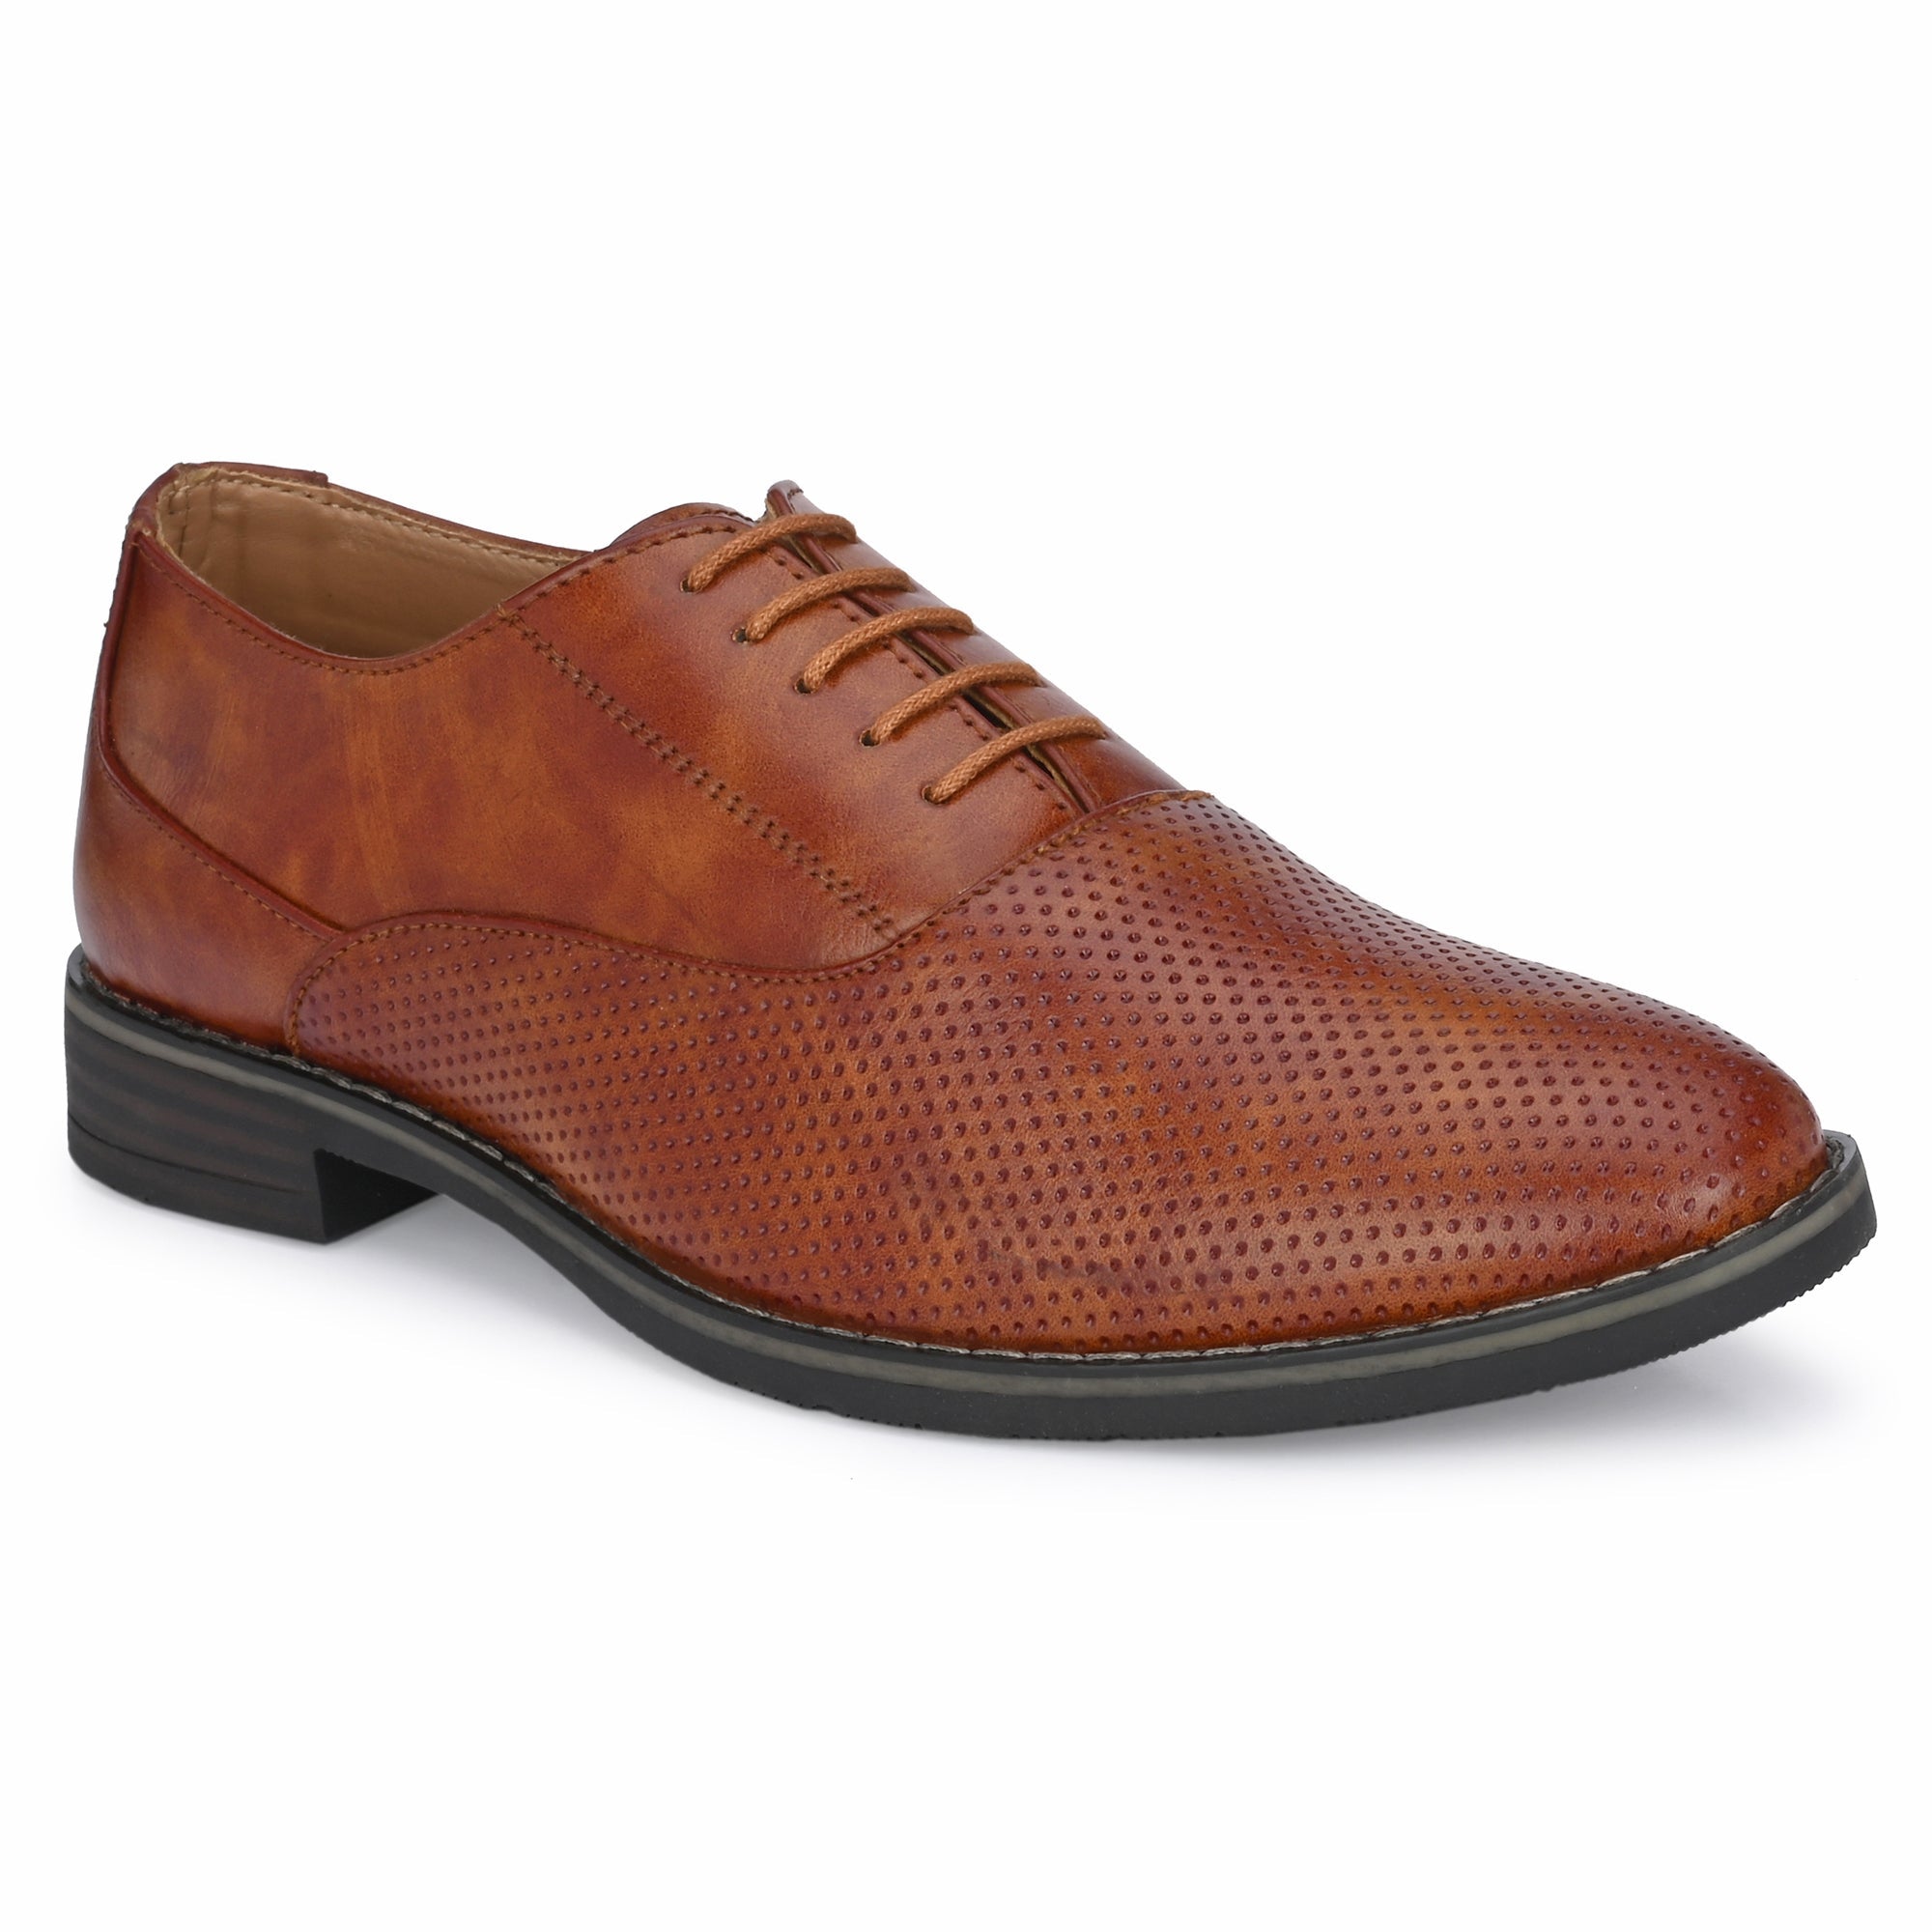 tan-formal-lace-up-attitudist-shoes-for-men-with-design-sp10c